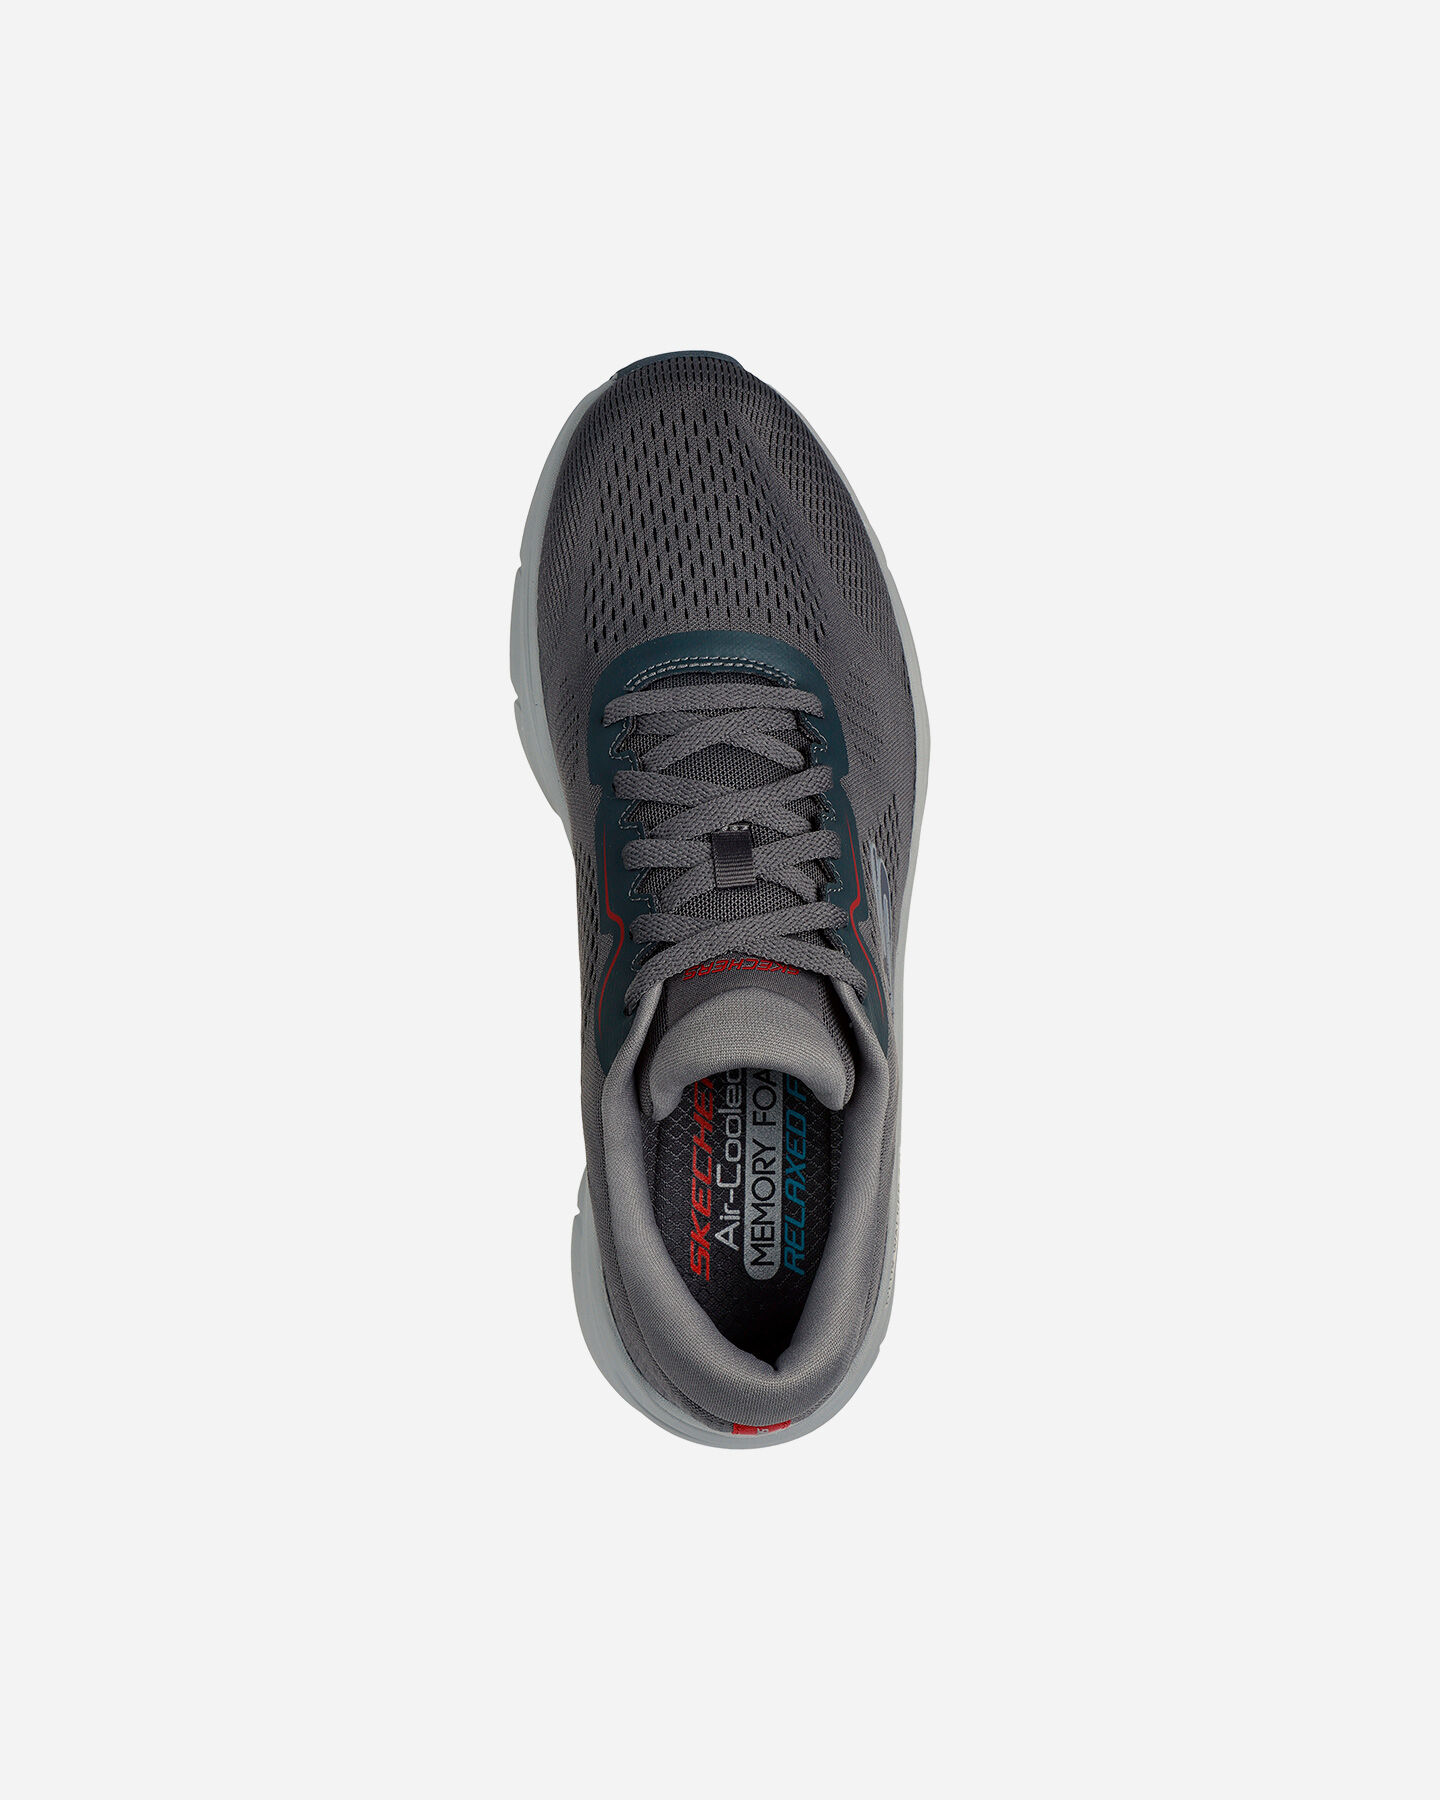  Scarpe sneakers SKECHERS D LUX WALKER 2.0 M S5669396|CCRD|40 scatto 3